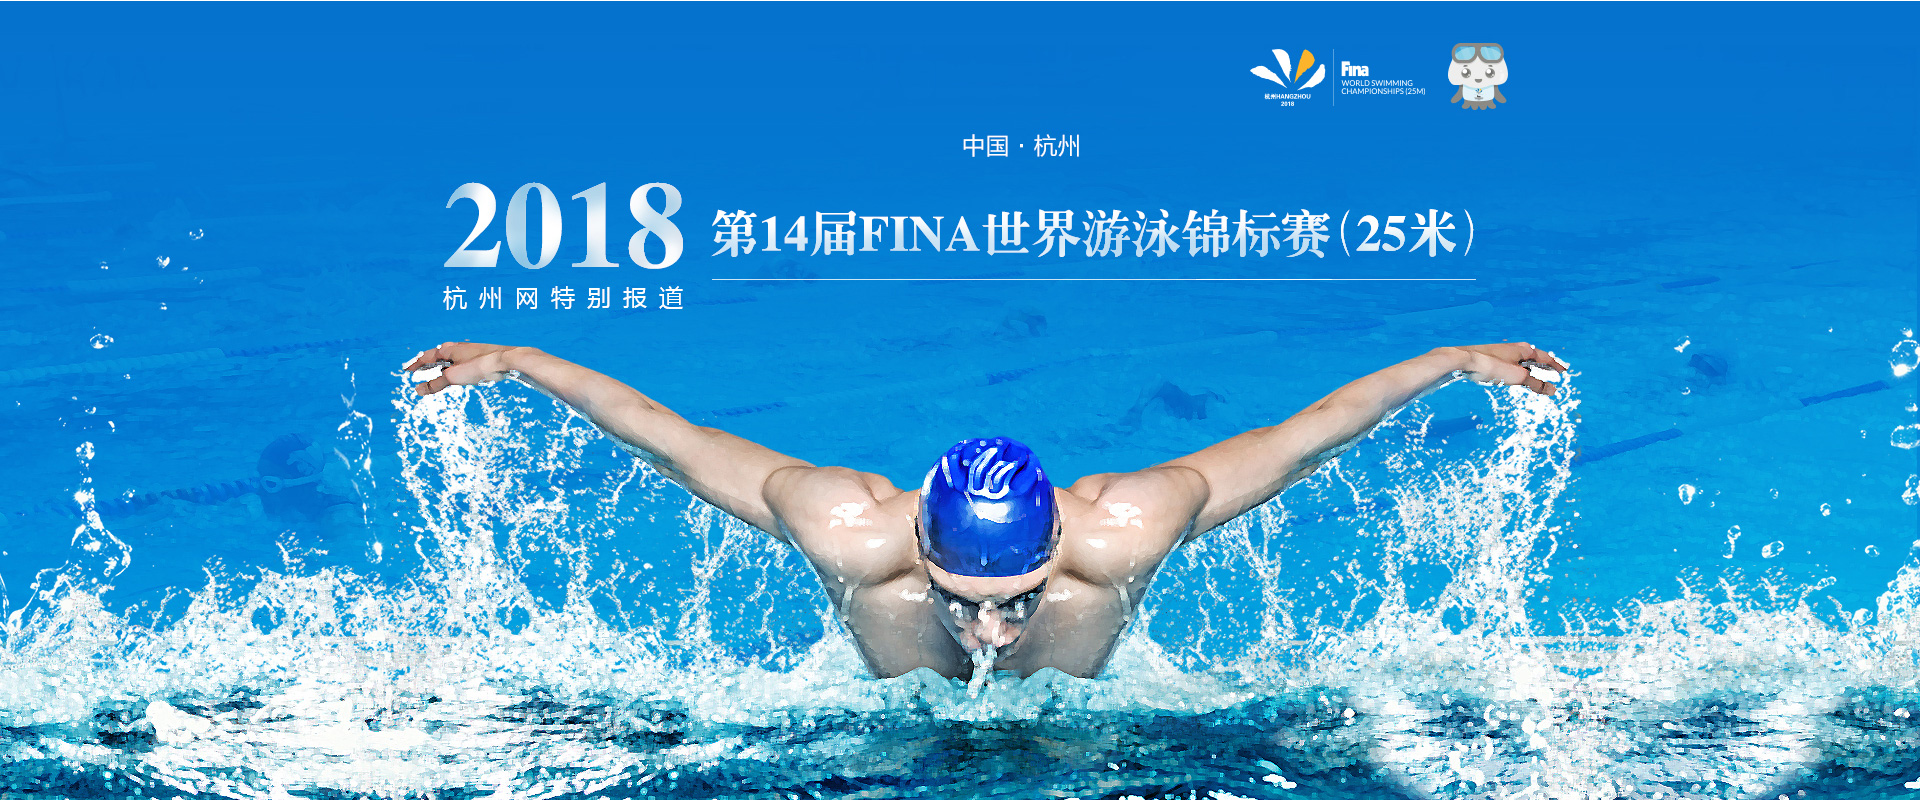 国内首届美国游泳协会SWIMS成绩认证赛@BCIS北京乐成国际学校-上海闵行区冠俊游泳俱乐部